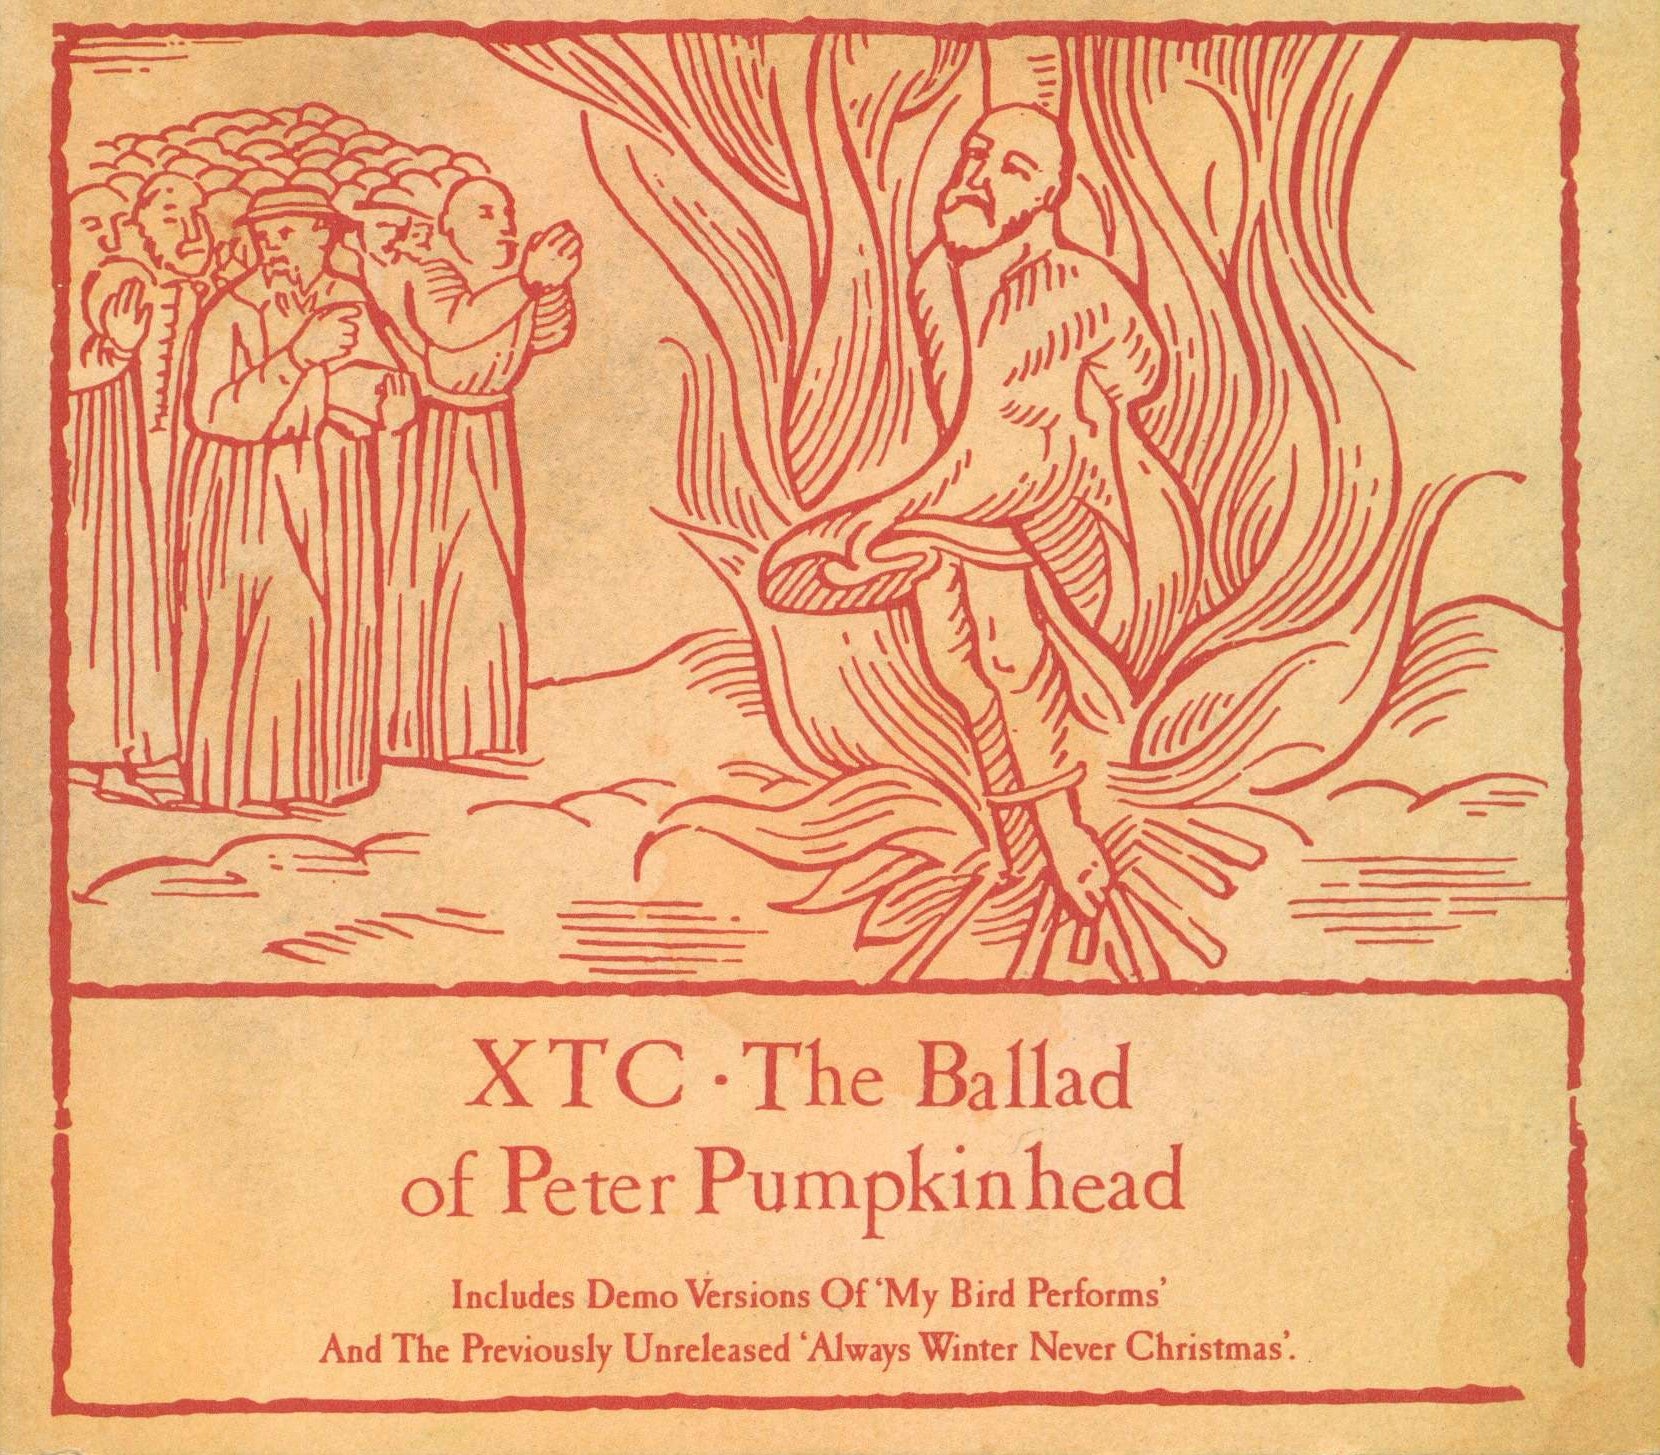 XTC, “The Ballad of Peter Pumpkinhead”